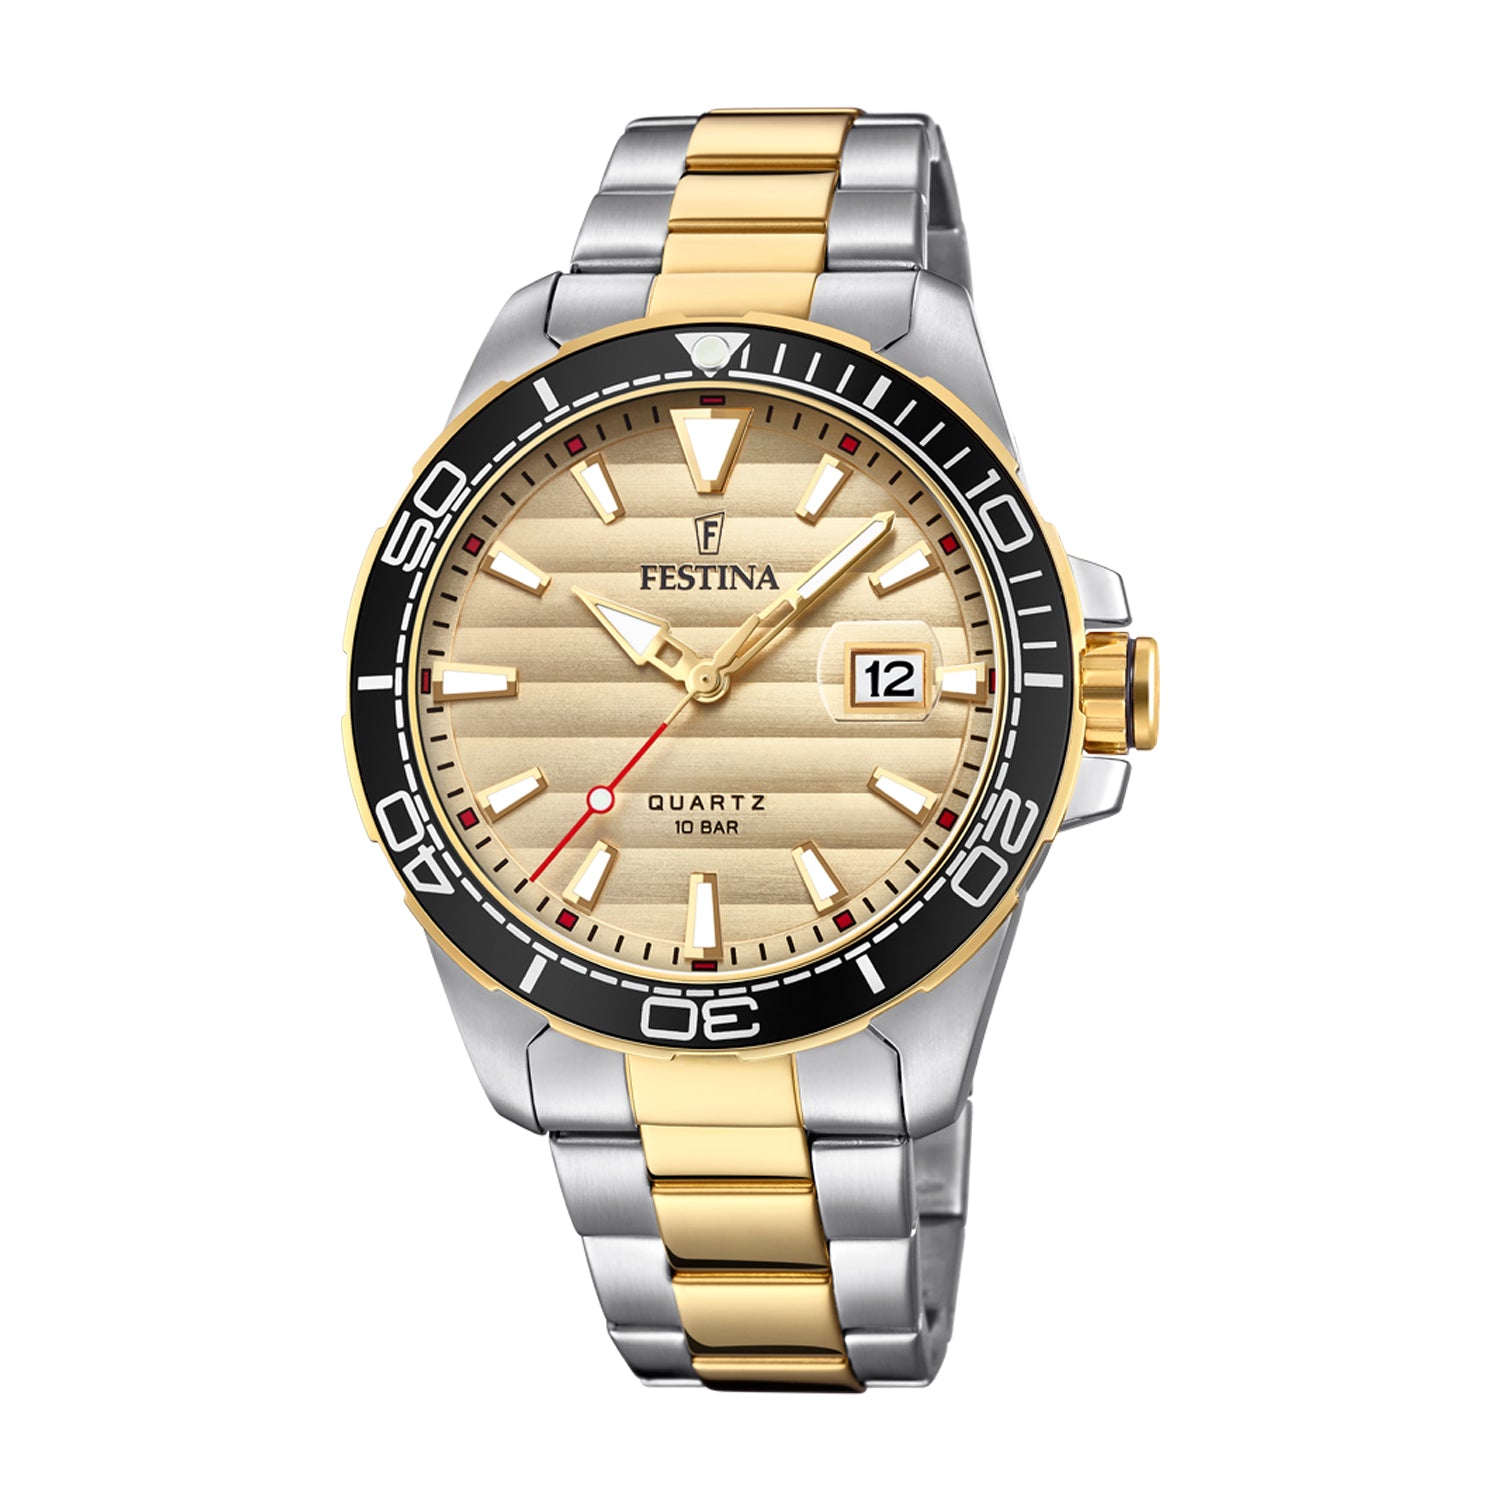 Festina Men's Quartz Watch Gold Dial - F20362/1